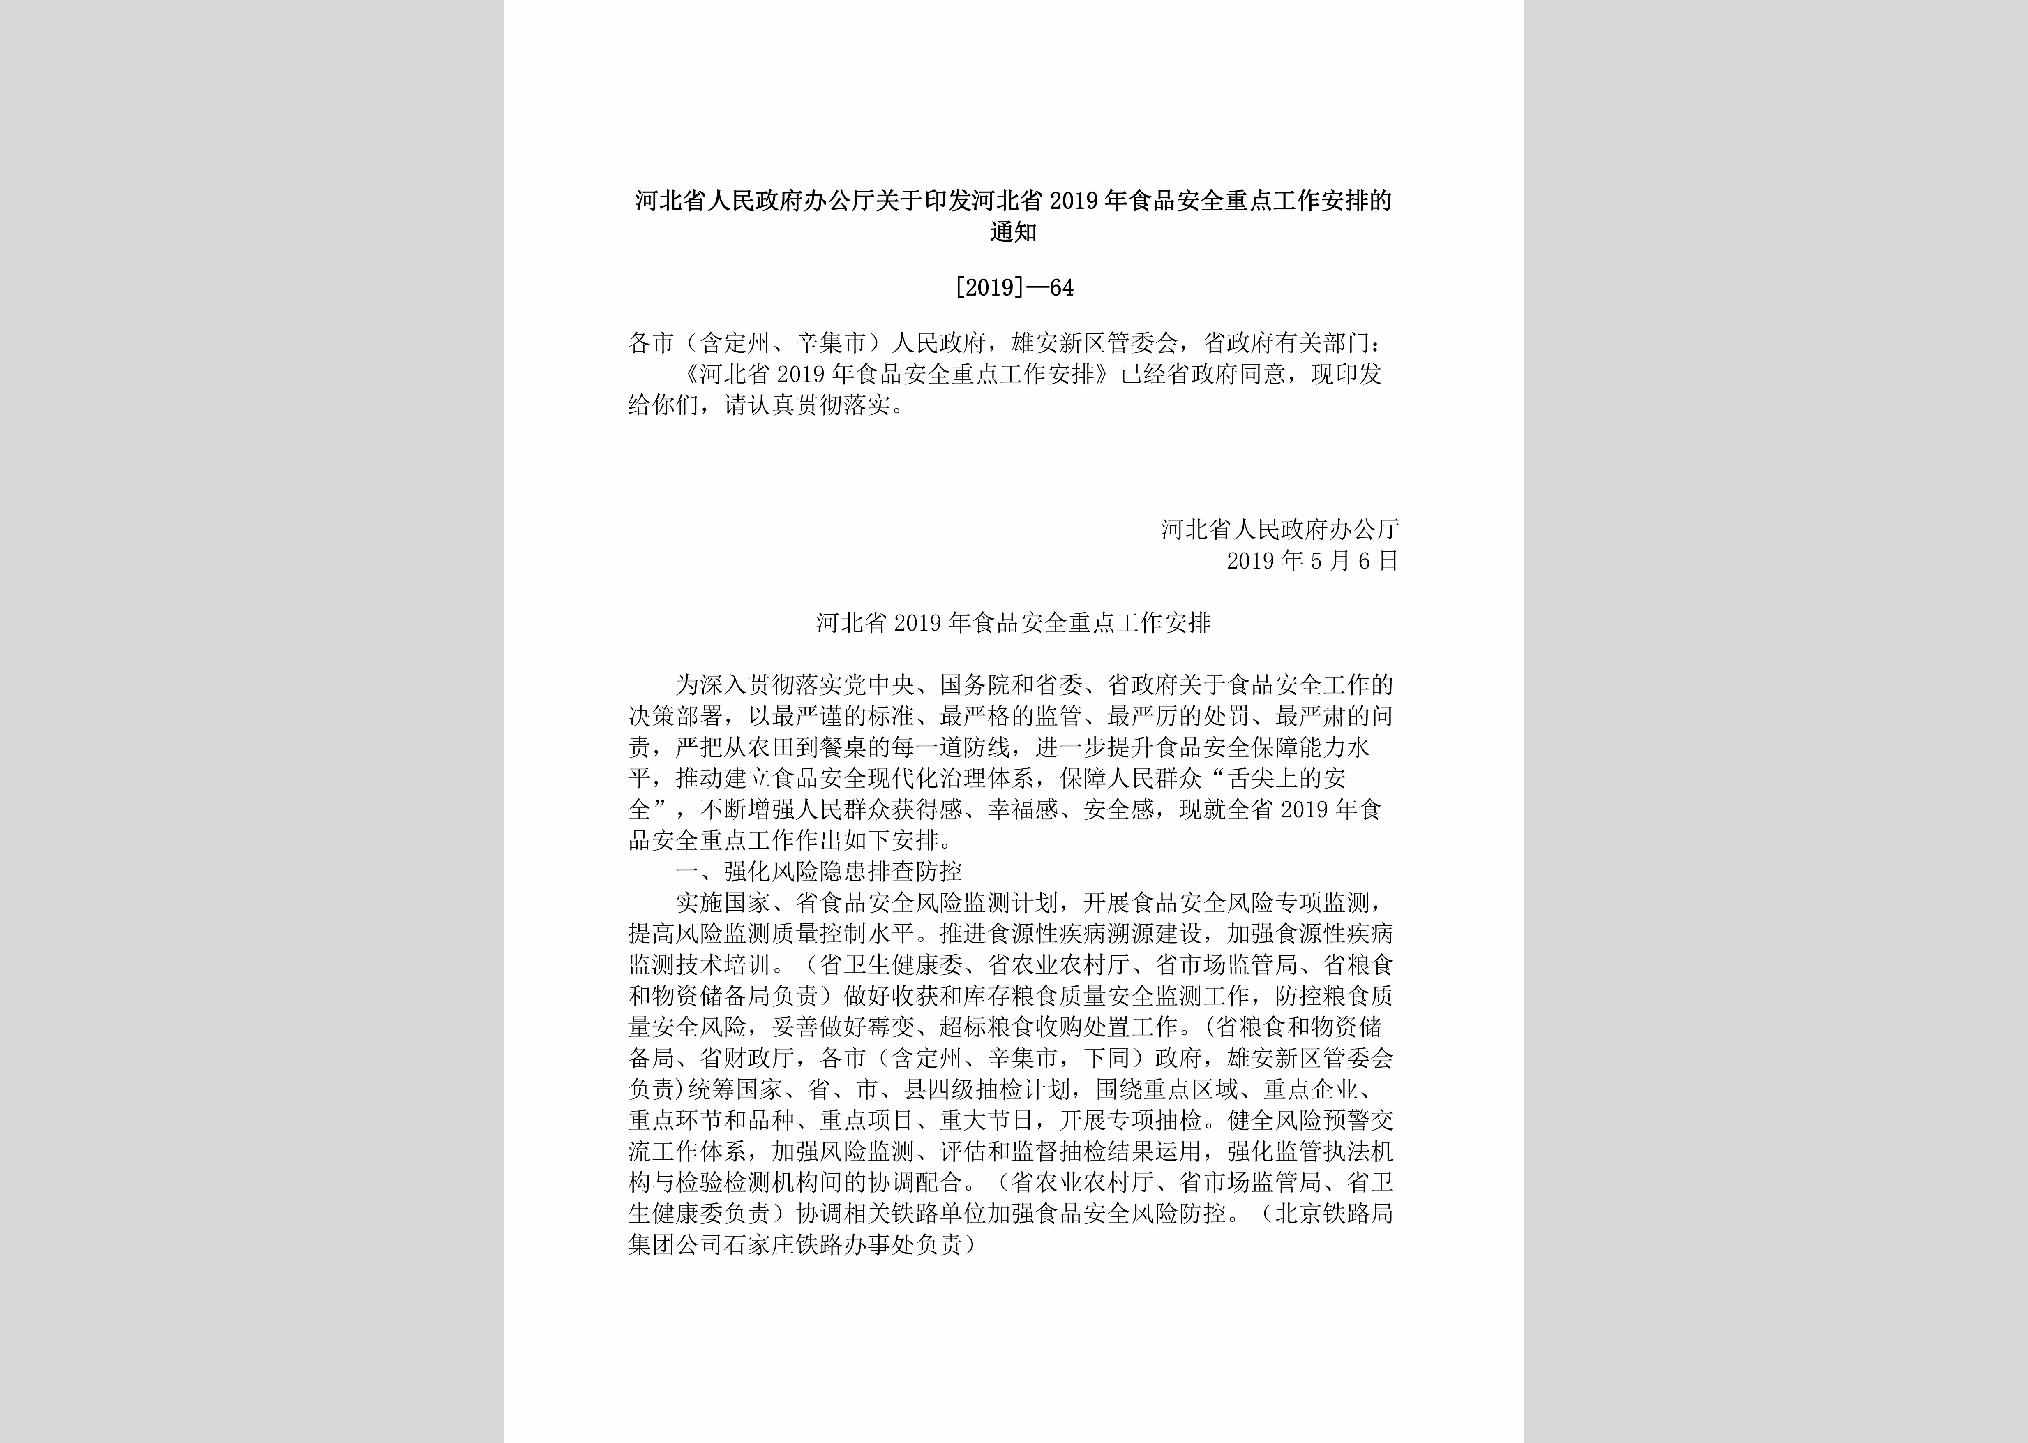 [2019]-64：河北省人民政府办公厅关于印发河北省2019年食品安全重点工作安排的通知